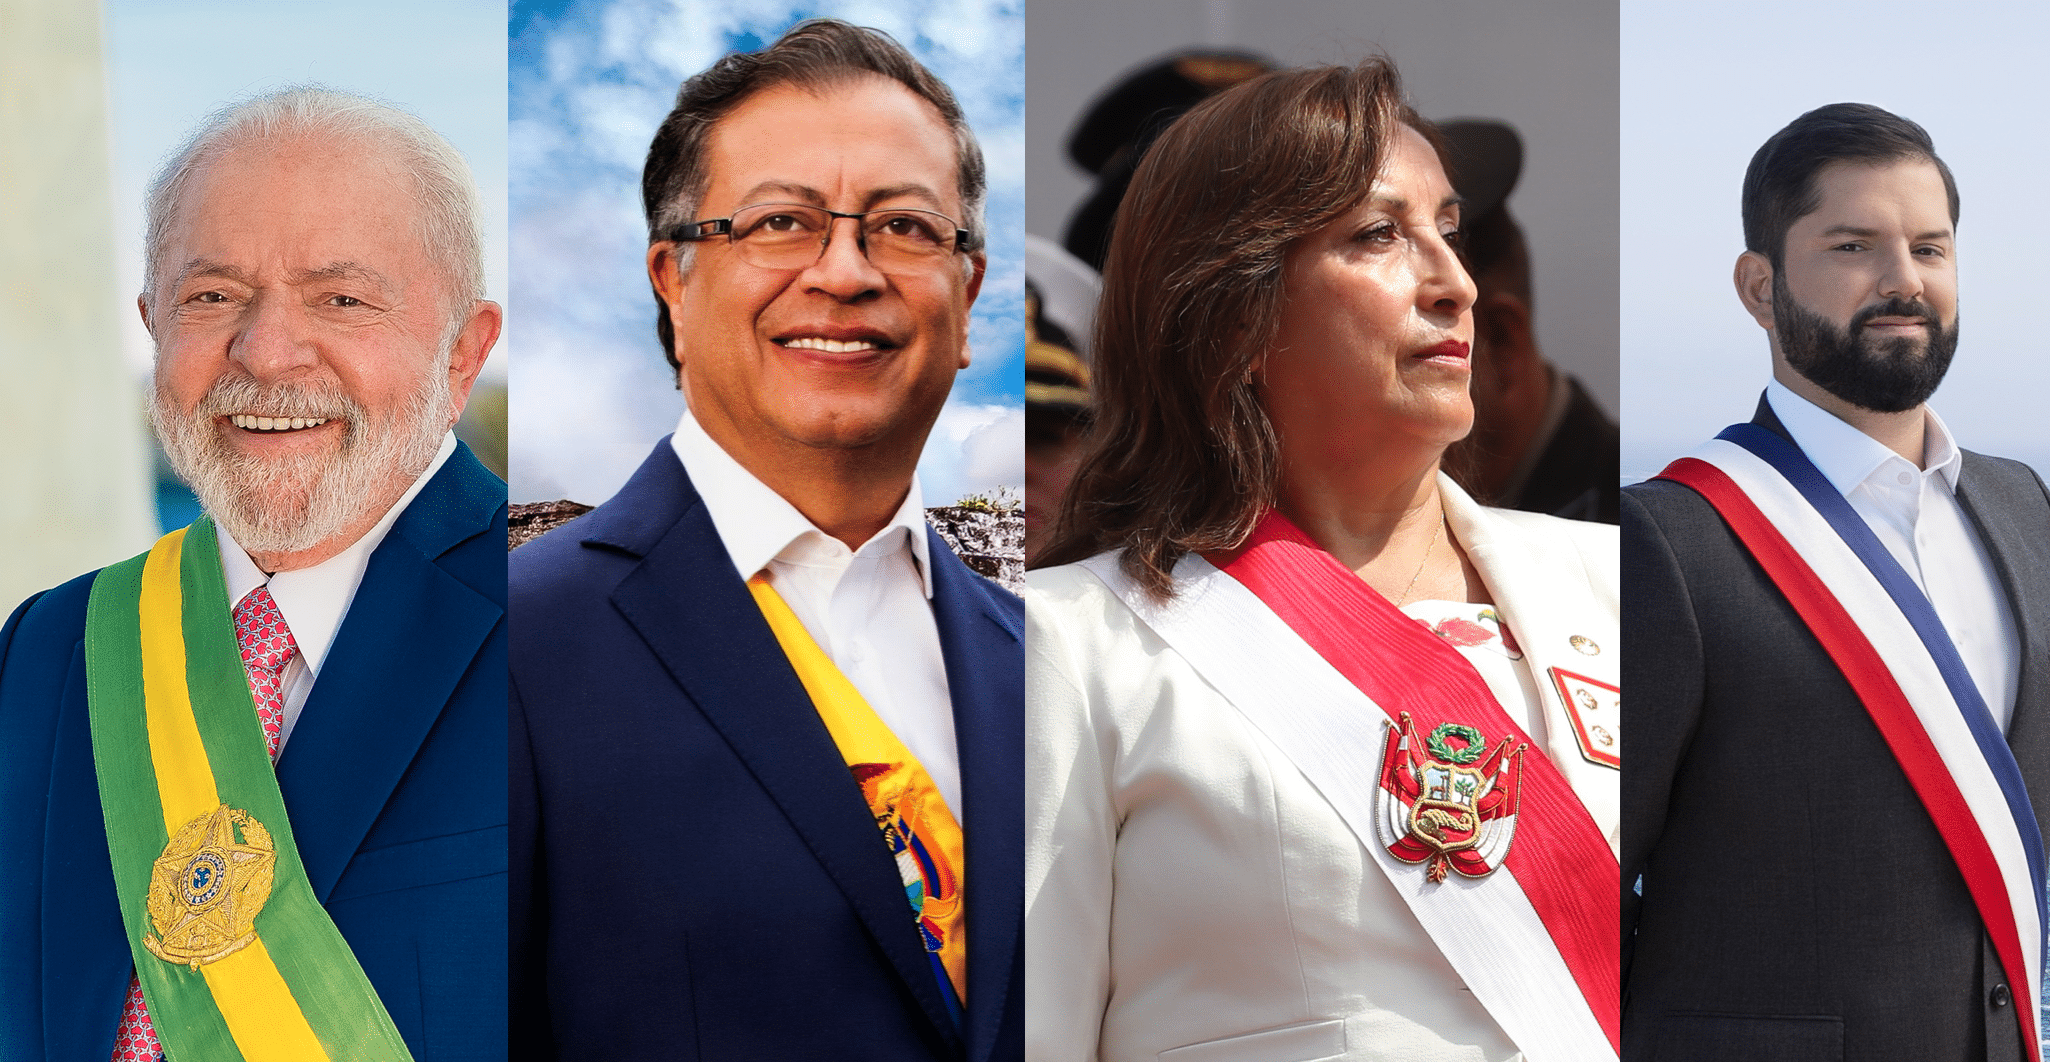 Les quatre mousquetaires de la gauche latino-américaine